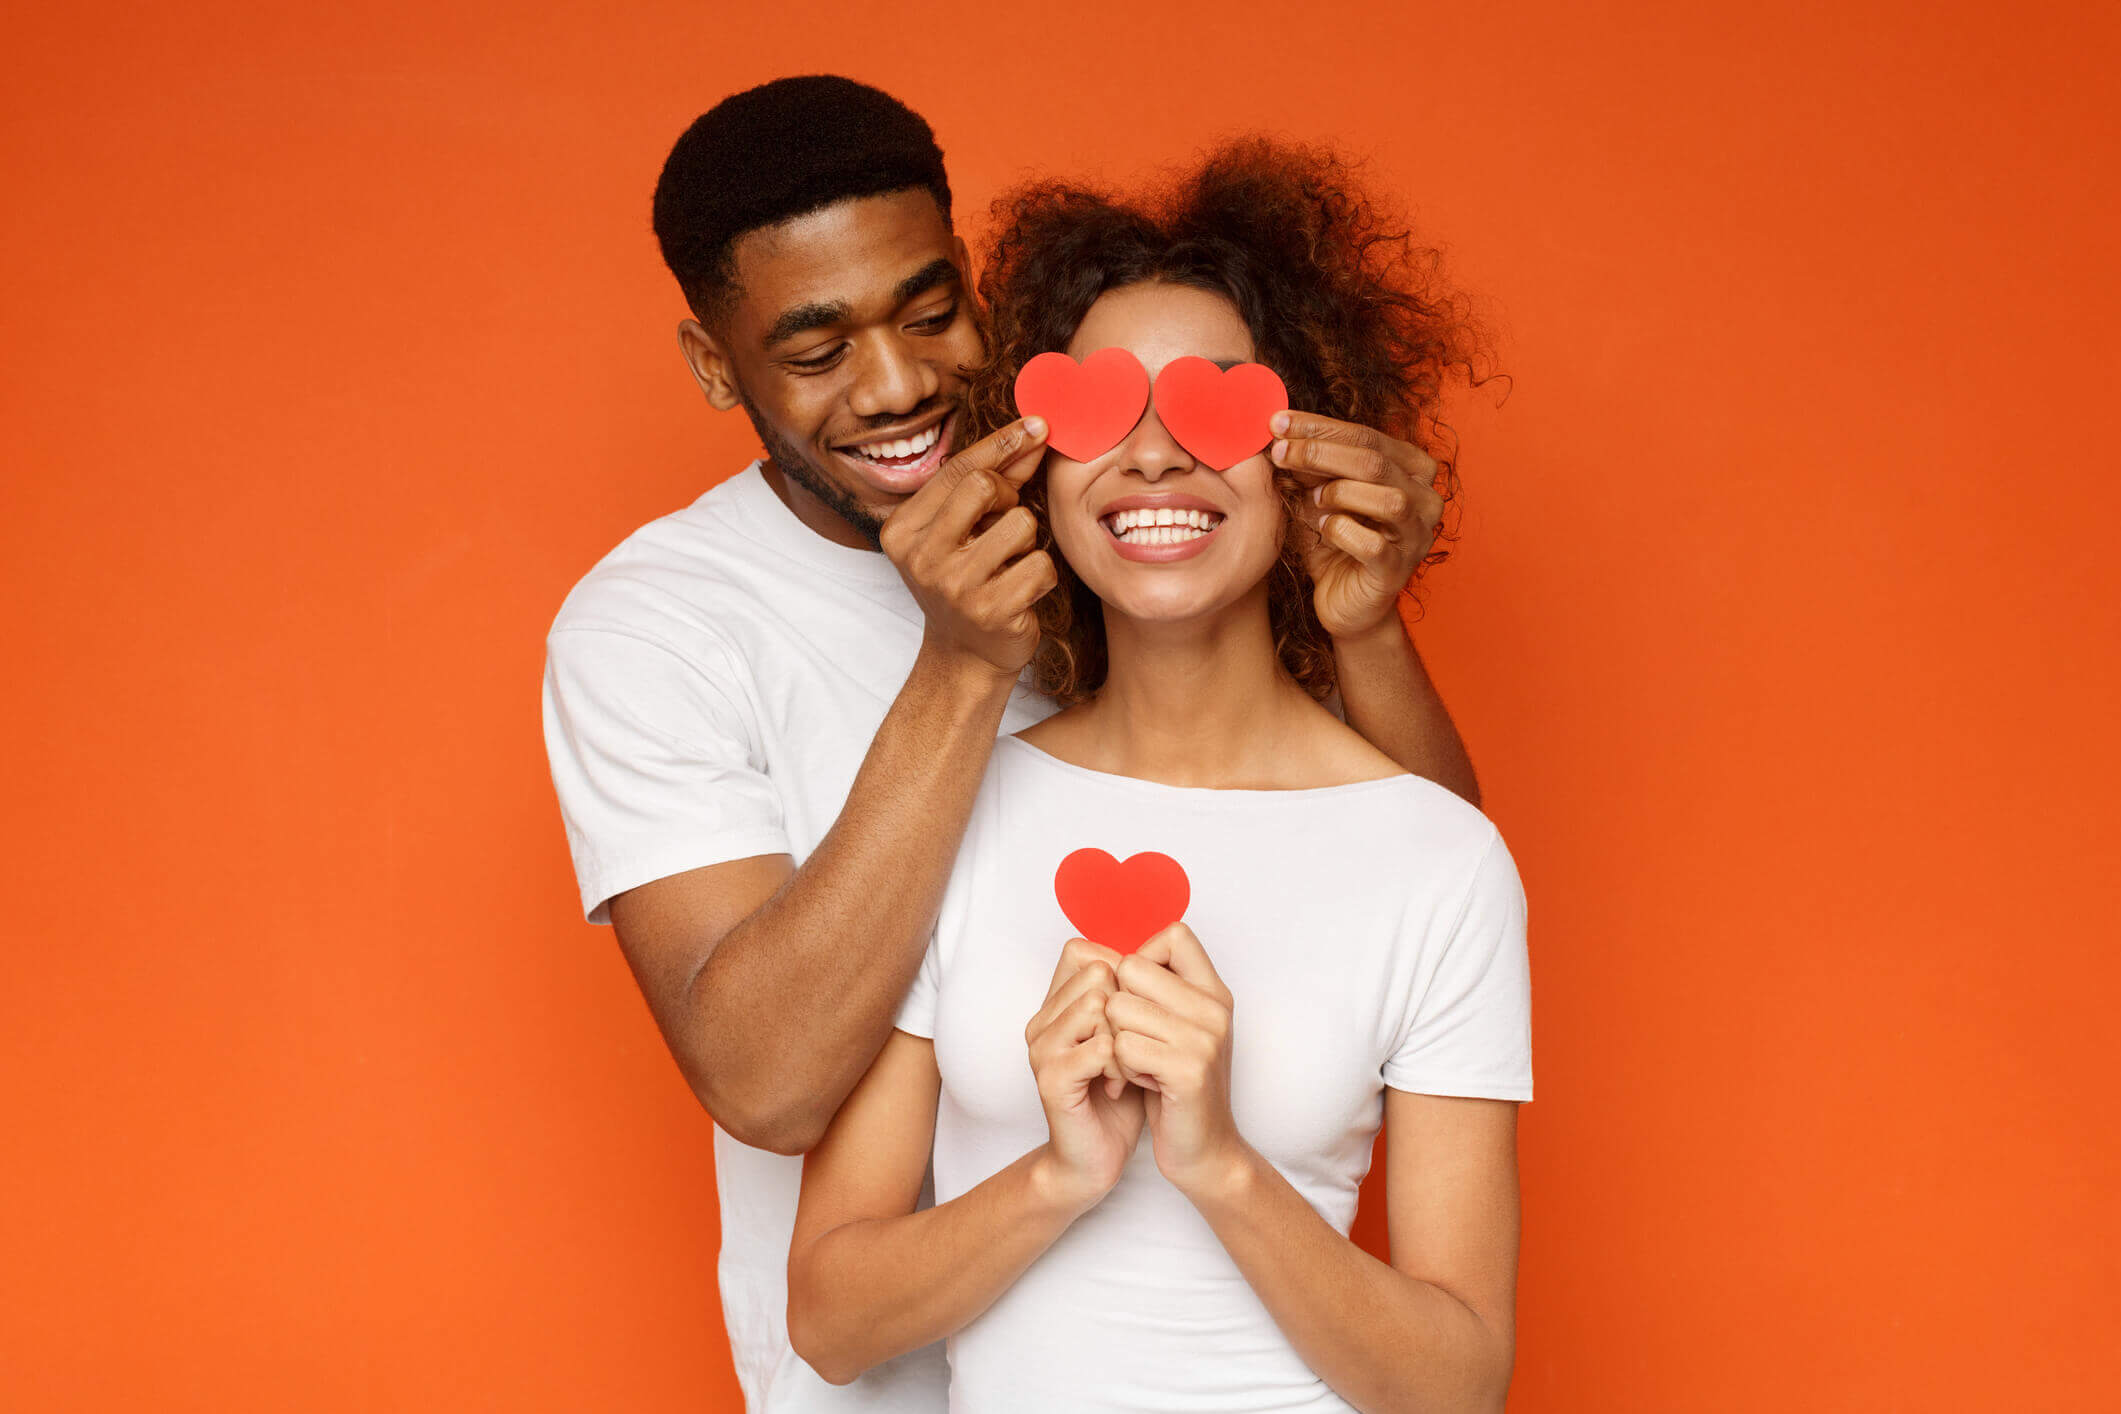 50 ideias de como puxar assunto com o namorado